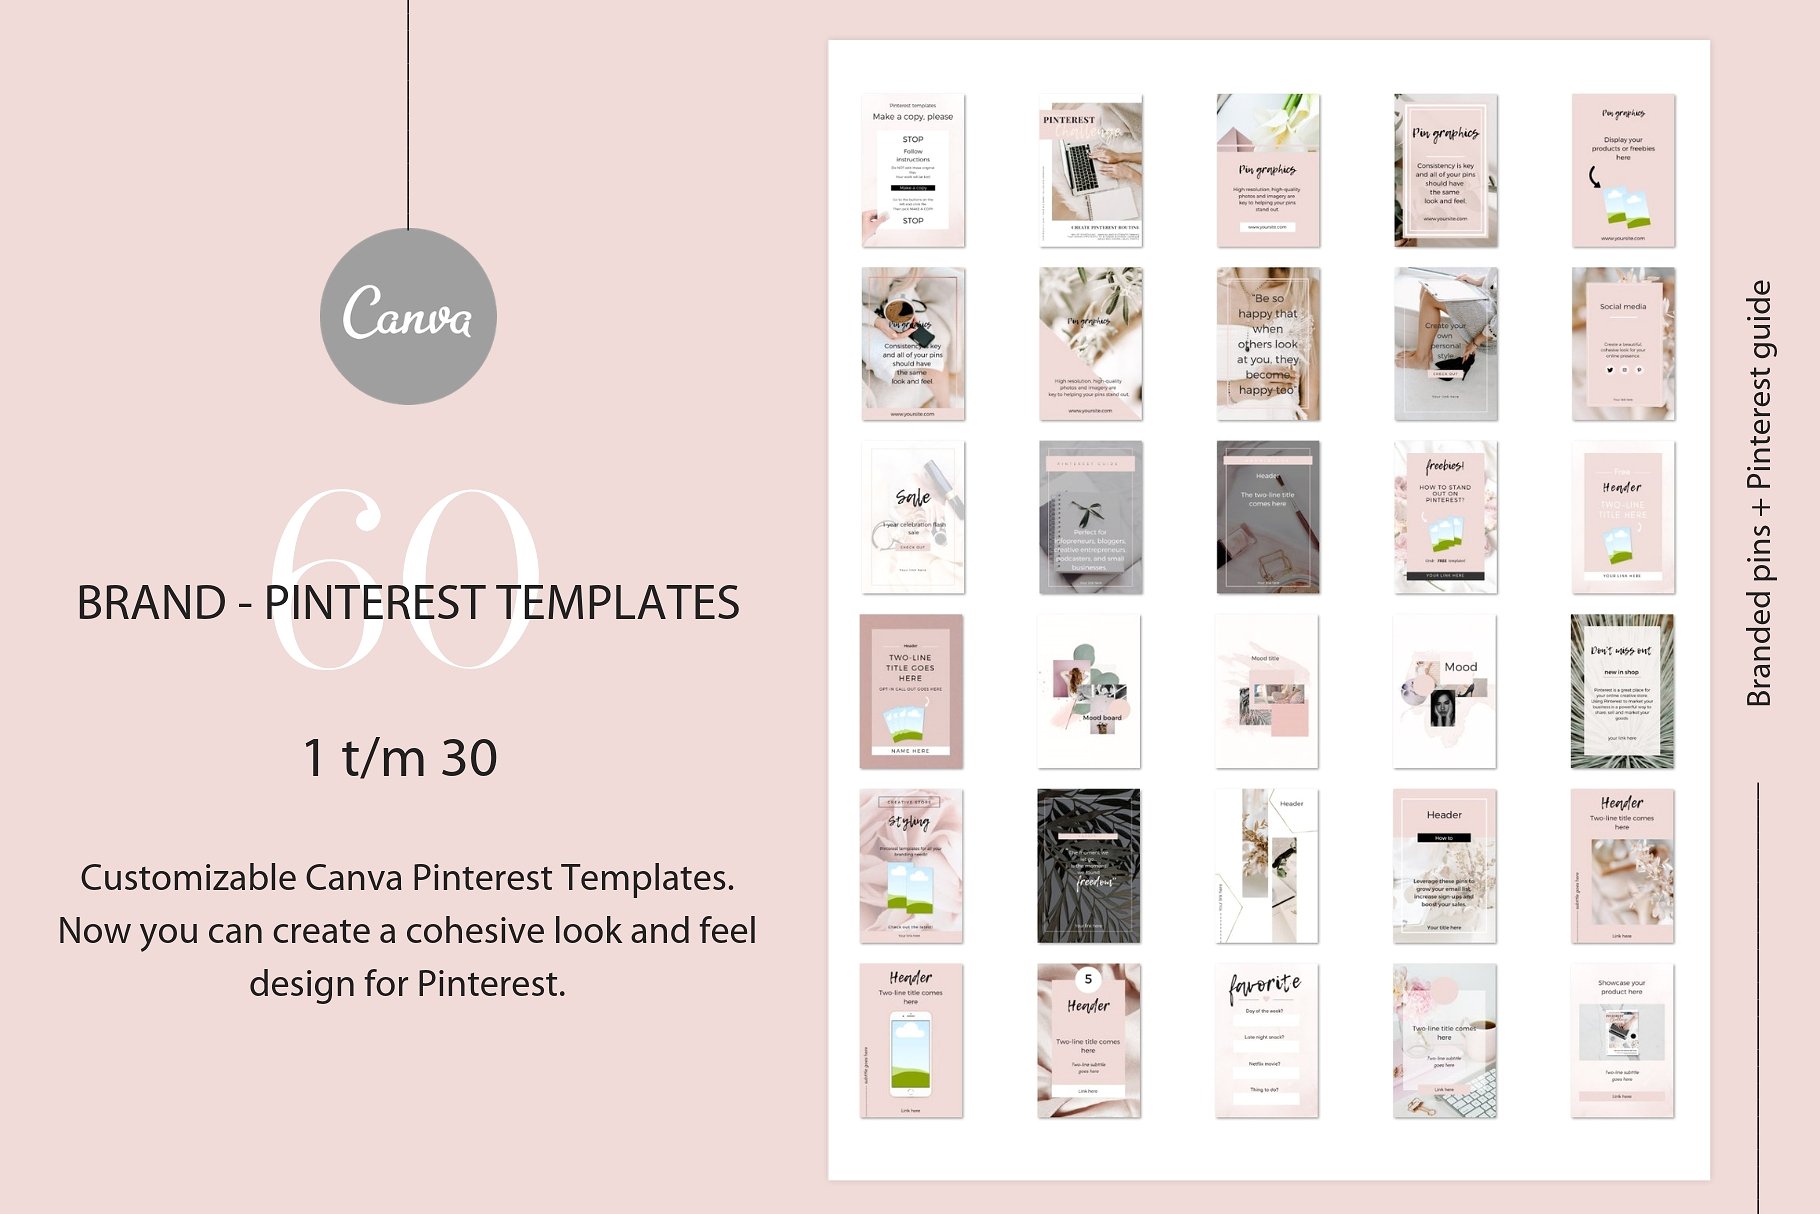 高品质的品牌社交媒体宣传Canva模板素材库精选 Branded pins + Pinterest guide [jpg,pdf]插图(3)